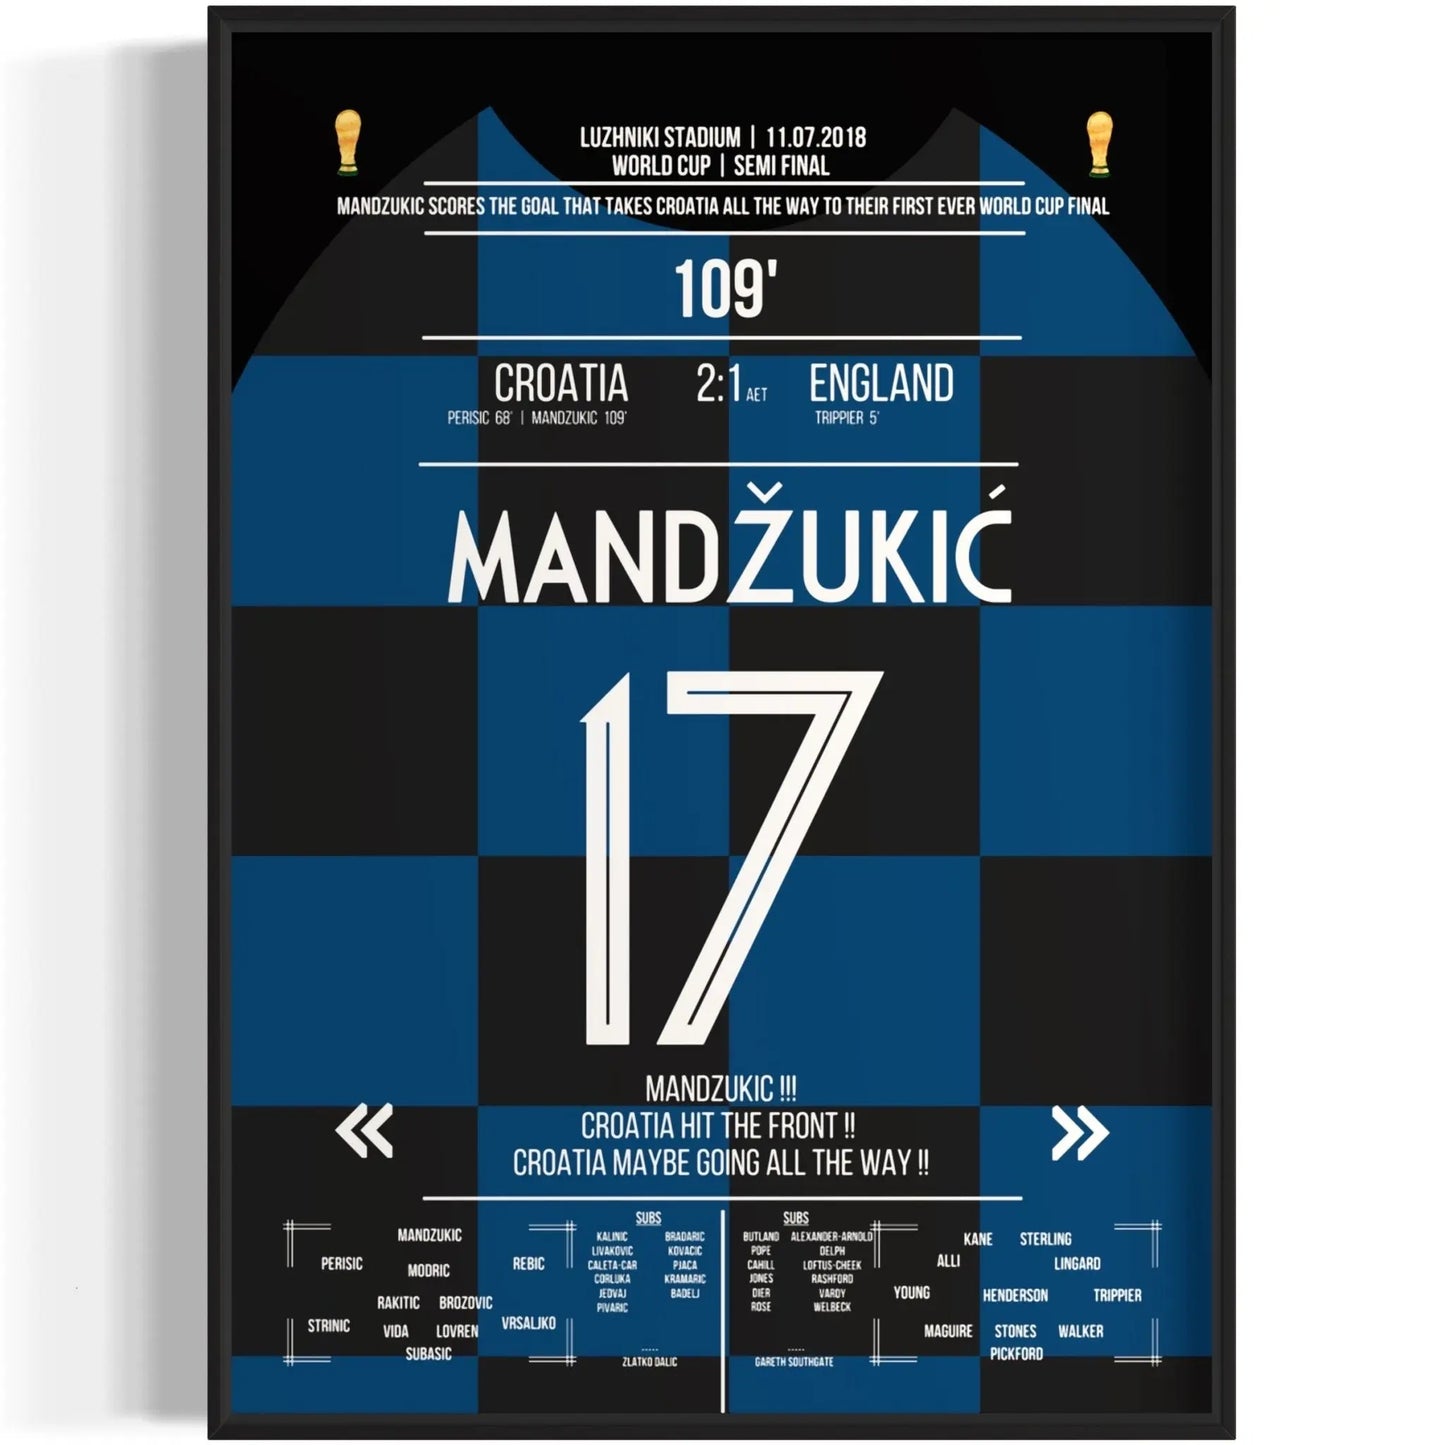 Le but de la finale de la Coupe du monde ! Mandzukic propulse la Croatie vers la victoire contre l'Angleterre en 2018